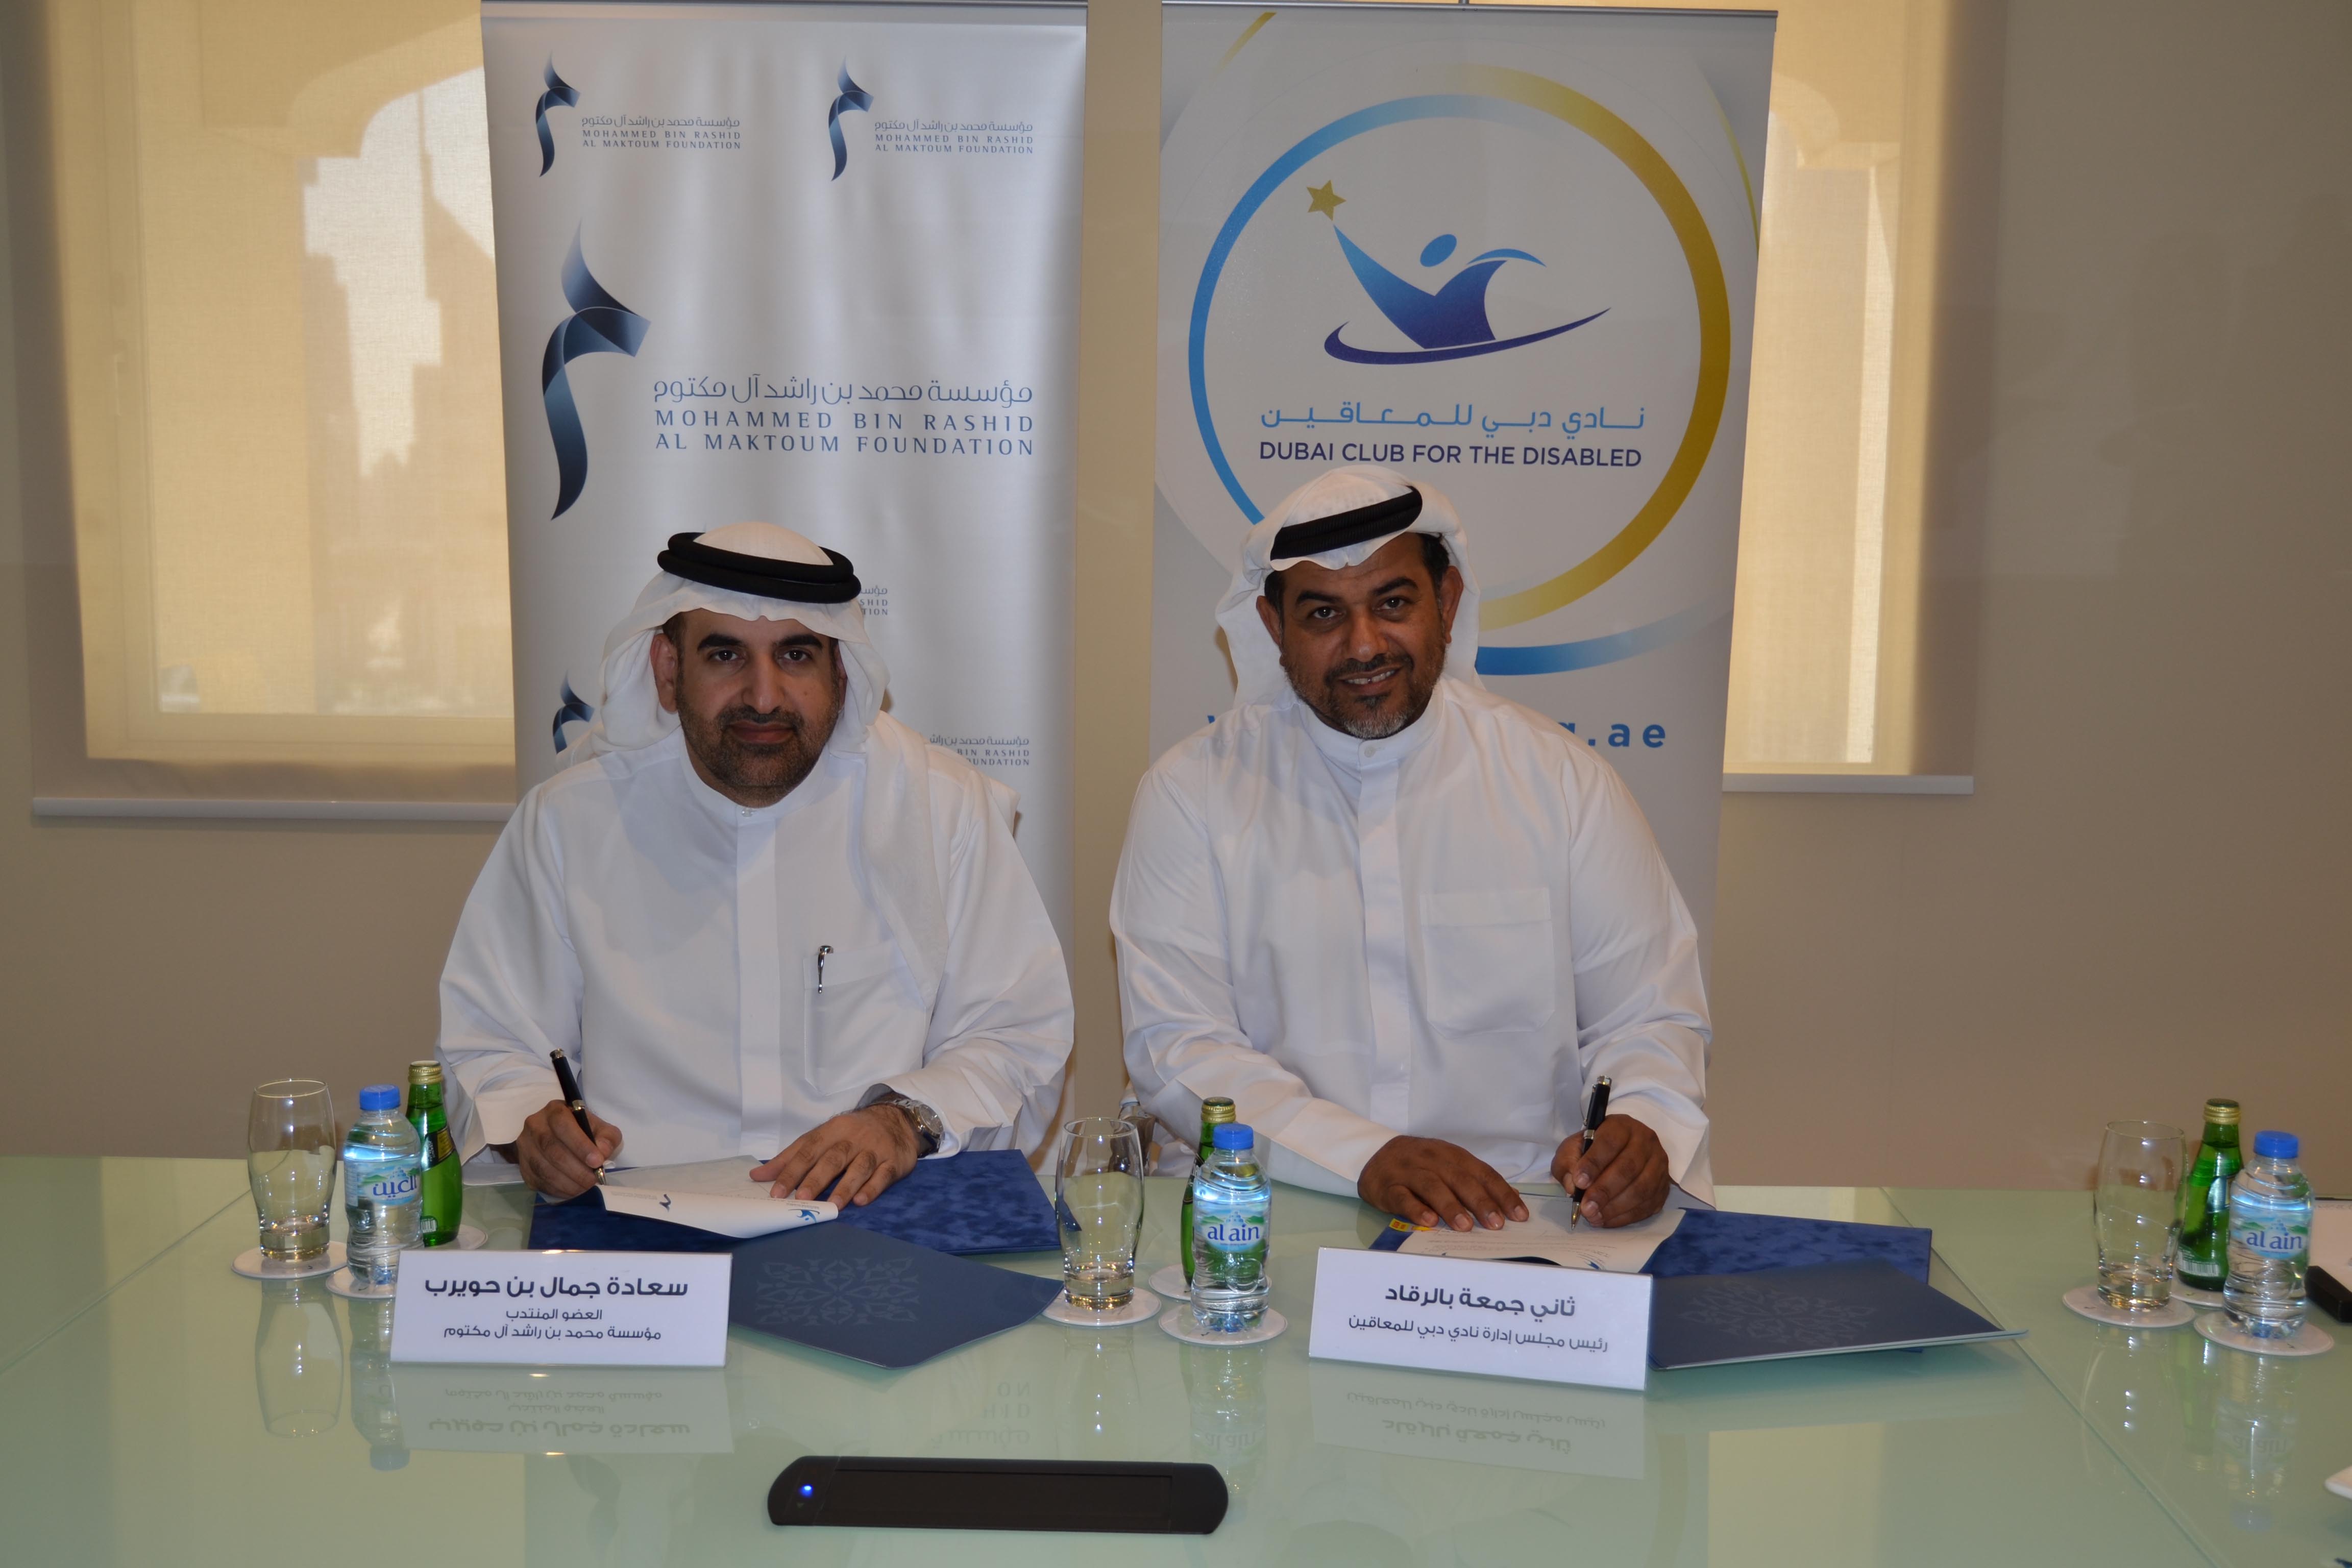 المؤسَّسة توقِّع اتفاقية شراكة مع نادي دبي للمعاقين لترجمة 22 كتيباً عالمياً لقوانين الألعاب البارالمبية الصيفية 5 نوفمبر